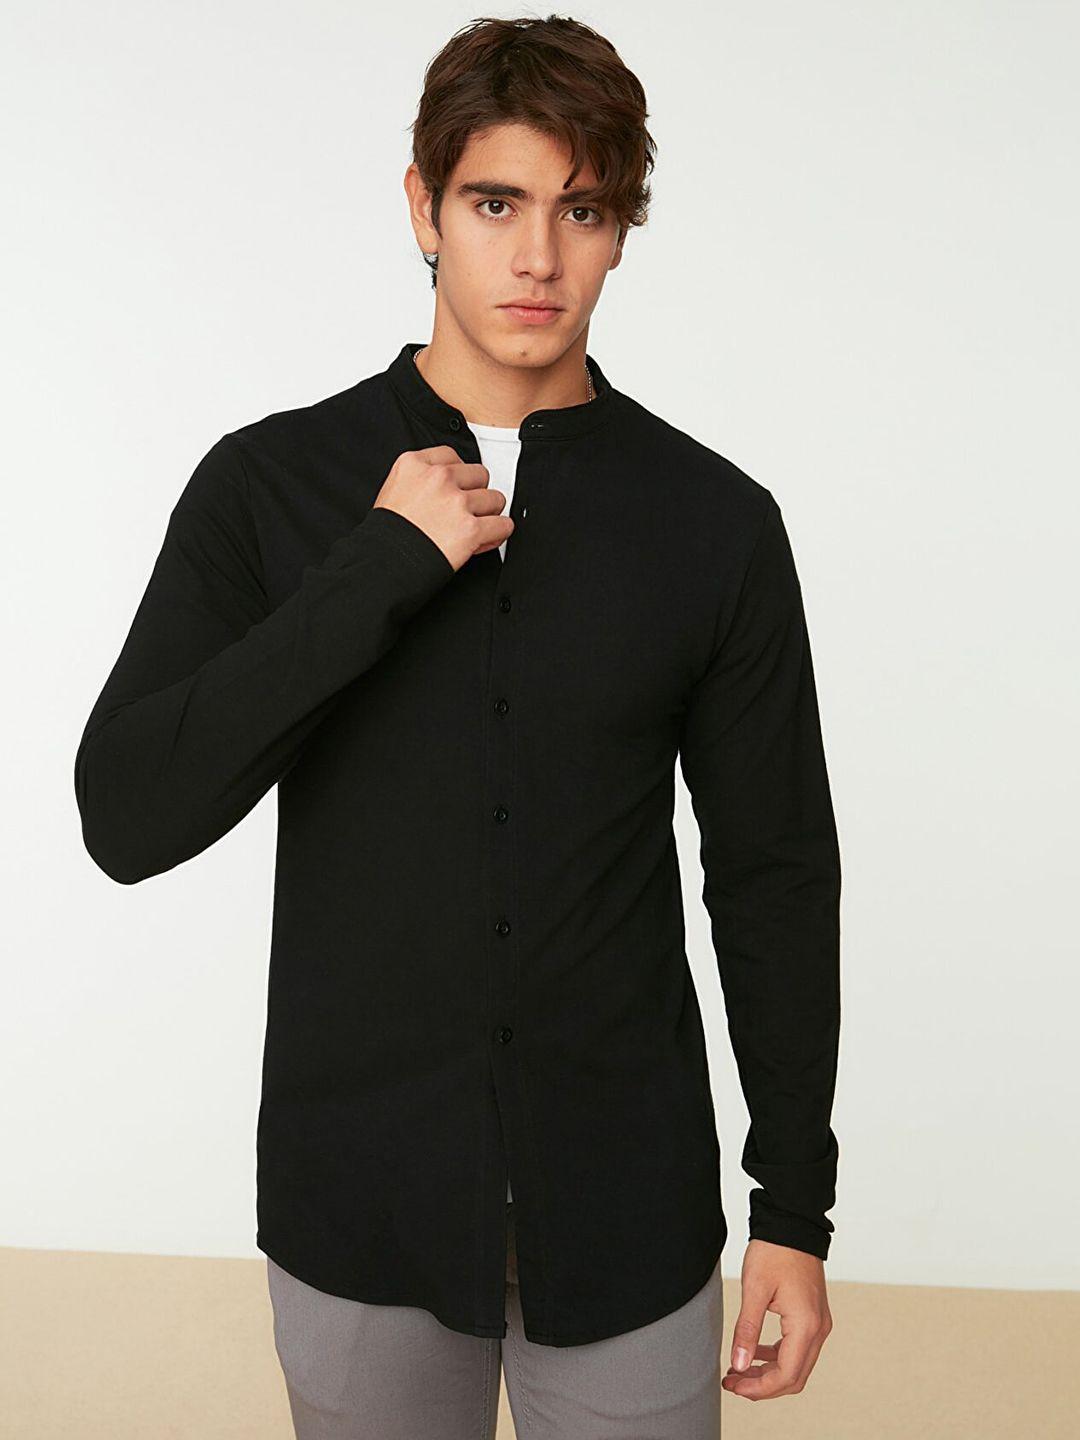 trendyol-men-black-pure-cotton-solid-slim-fit-pique-knit-casual-shirt